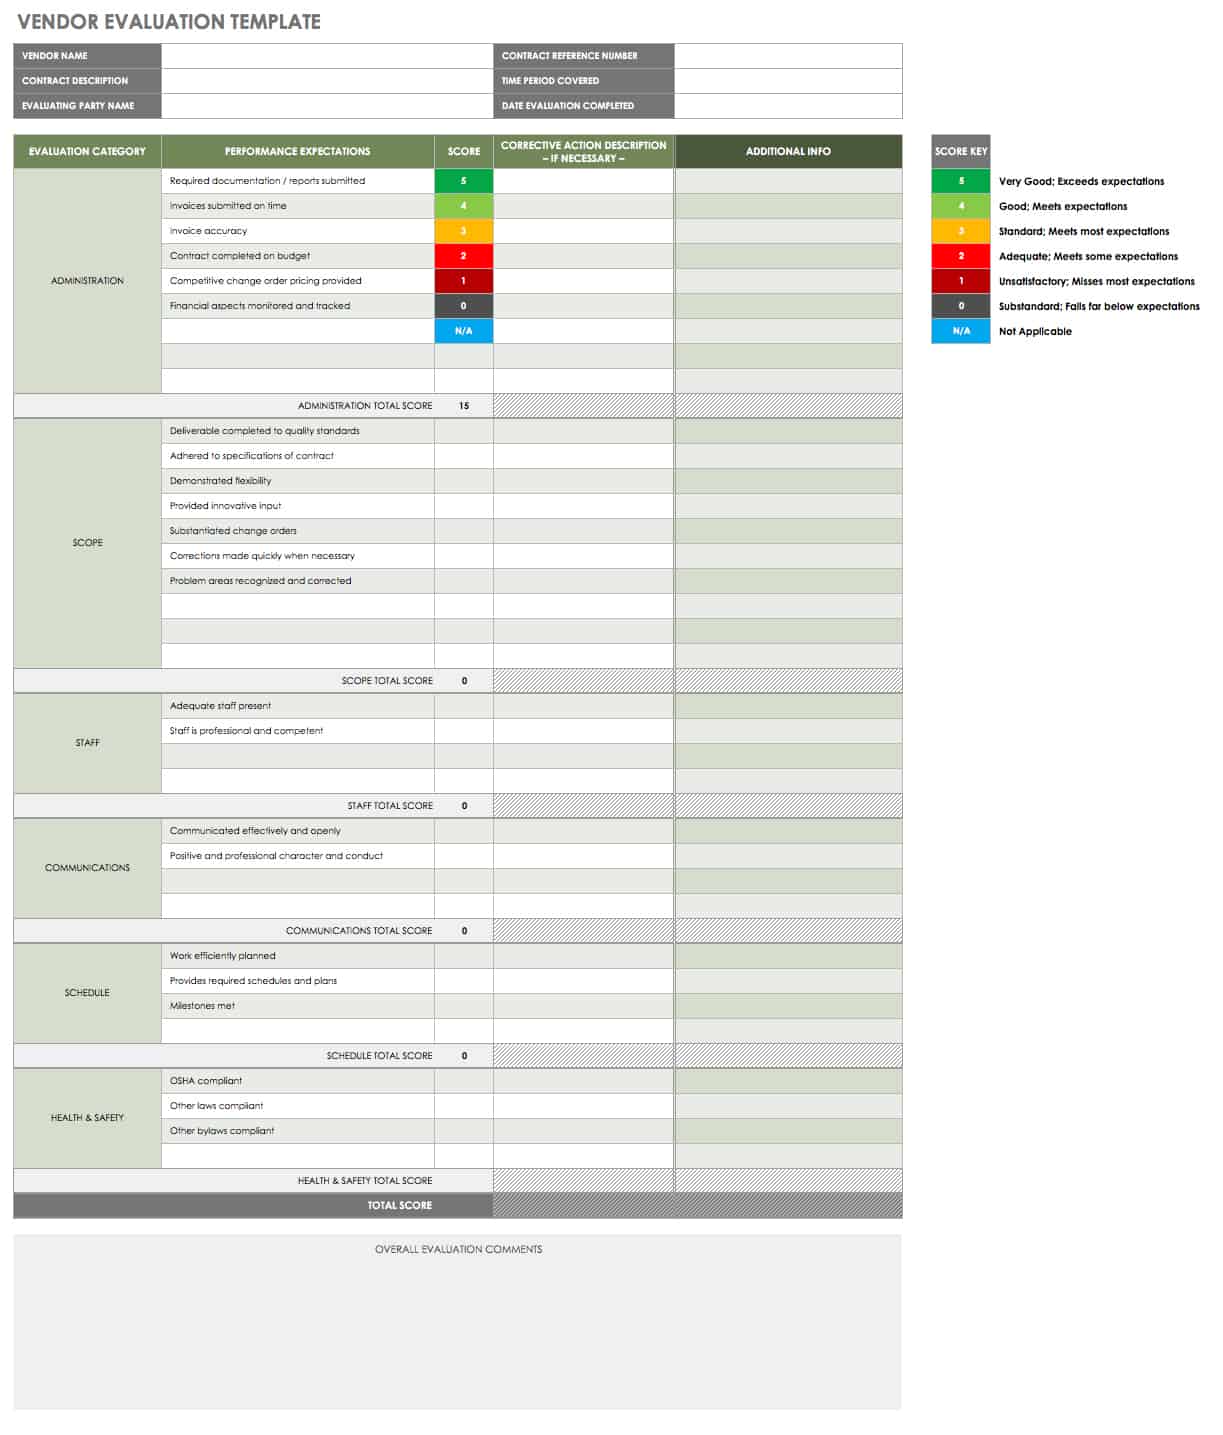 Vendor Assessment and Evaluation Guide Smartsheet